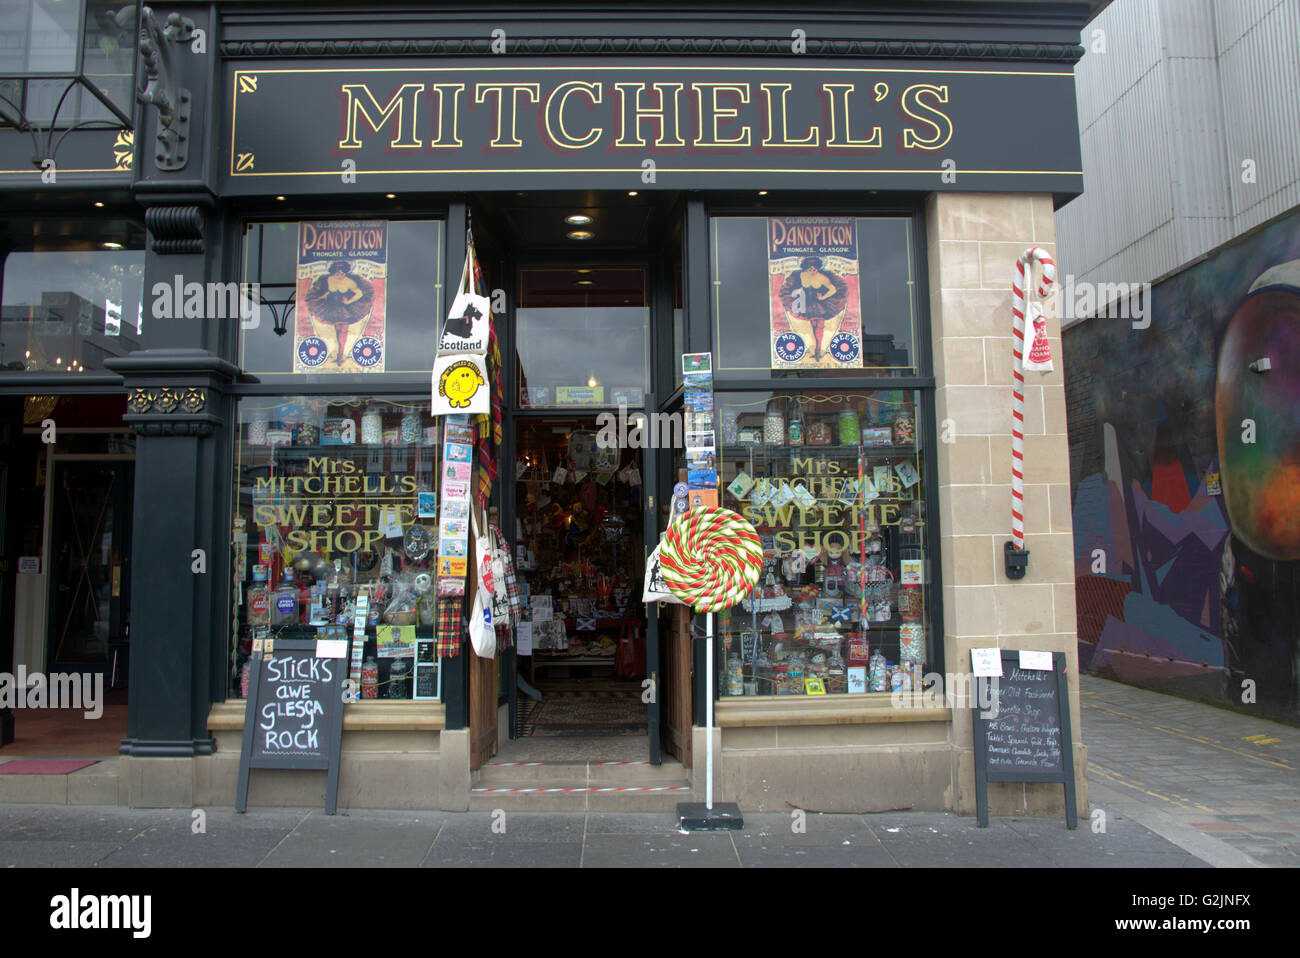 Mitchell's Sweet shop, Glasgow. New Wynd lane Stock Photo